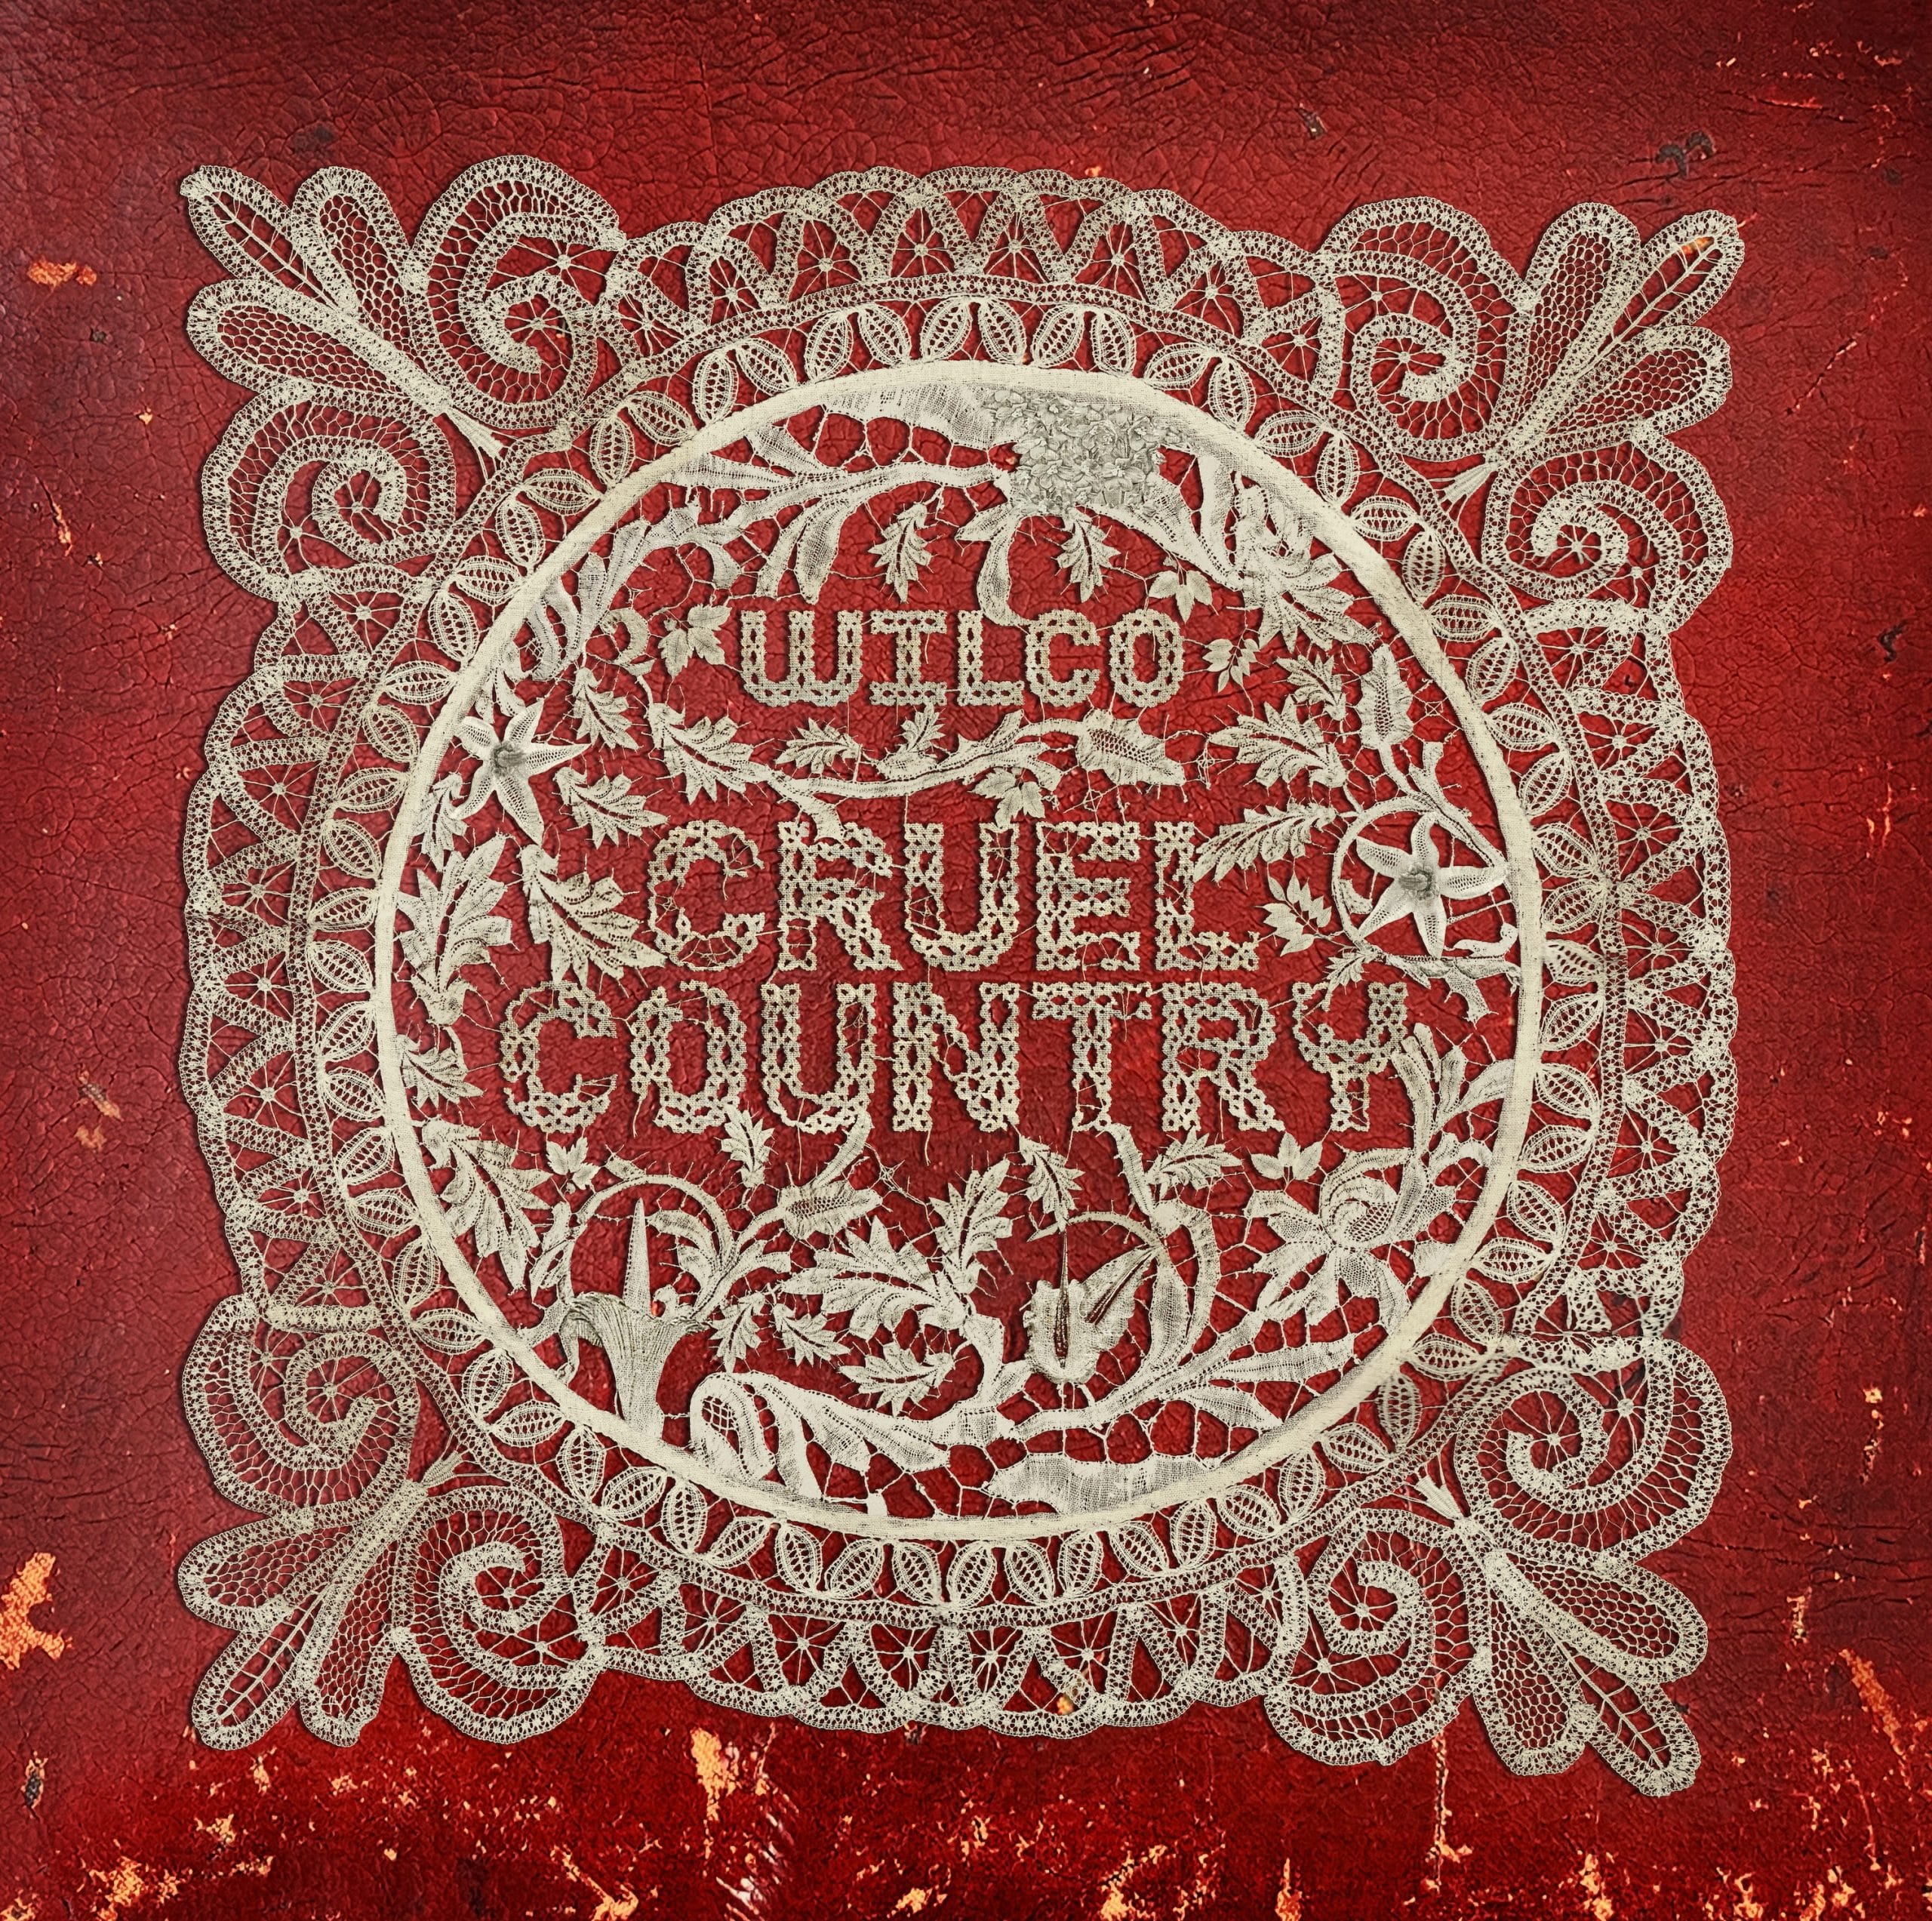 Wilco-Cruel-Country-Cover.jpg